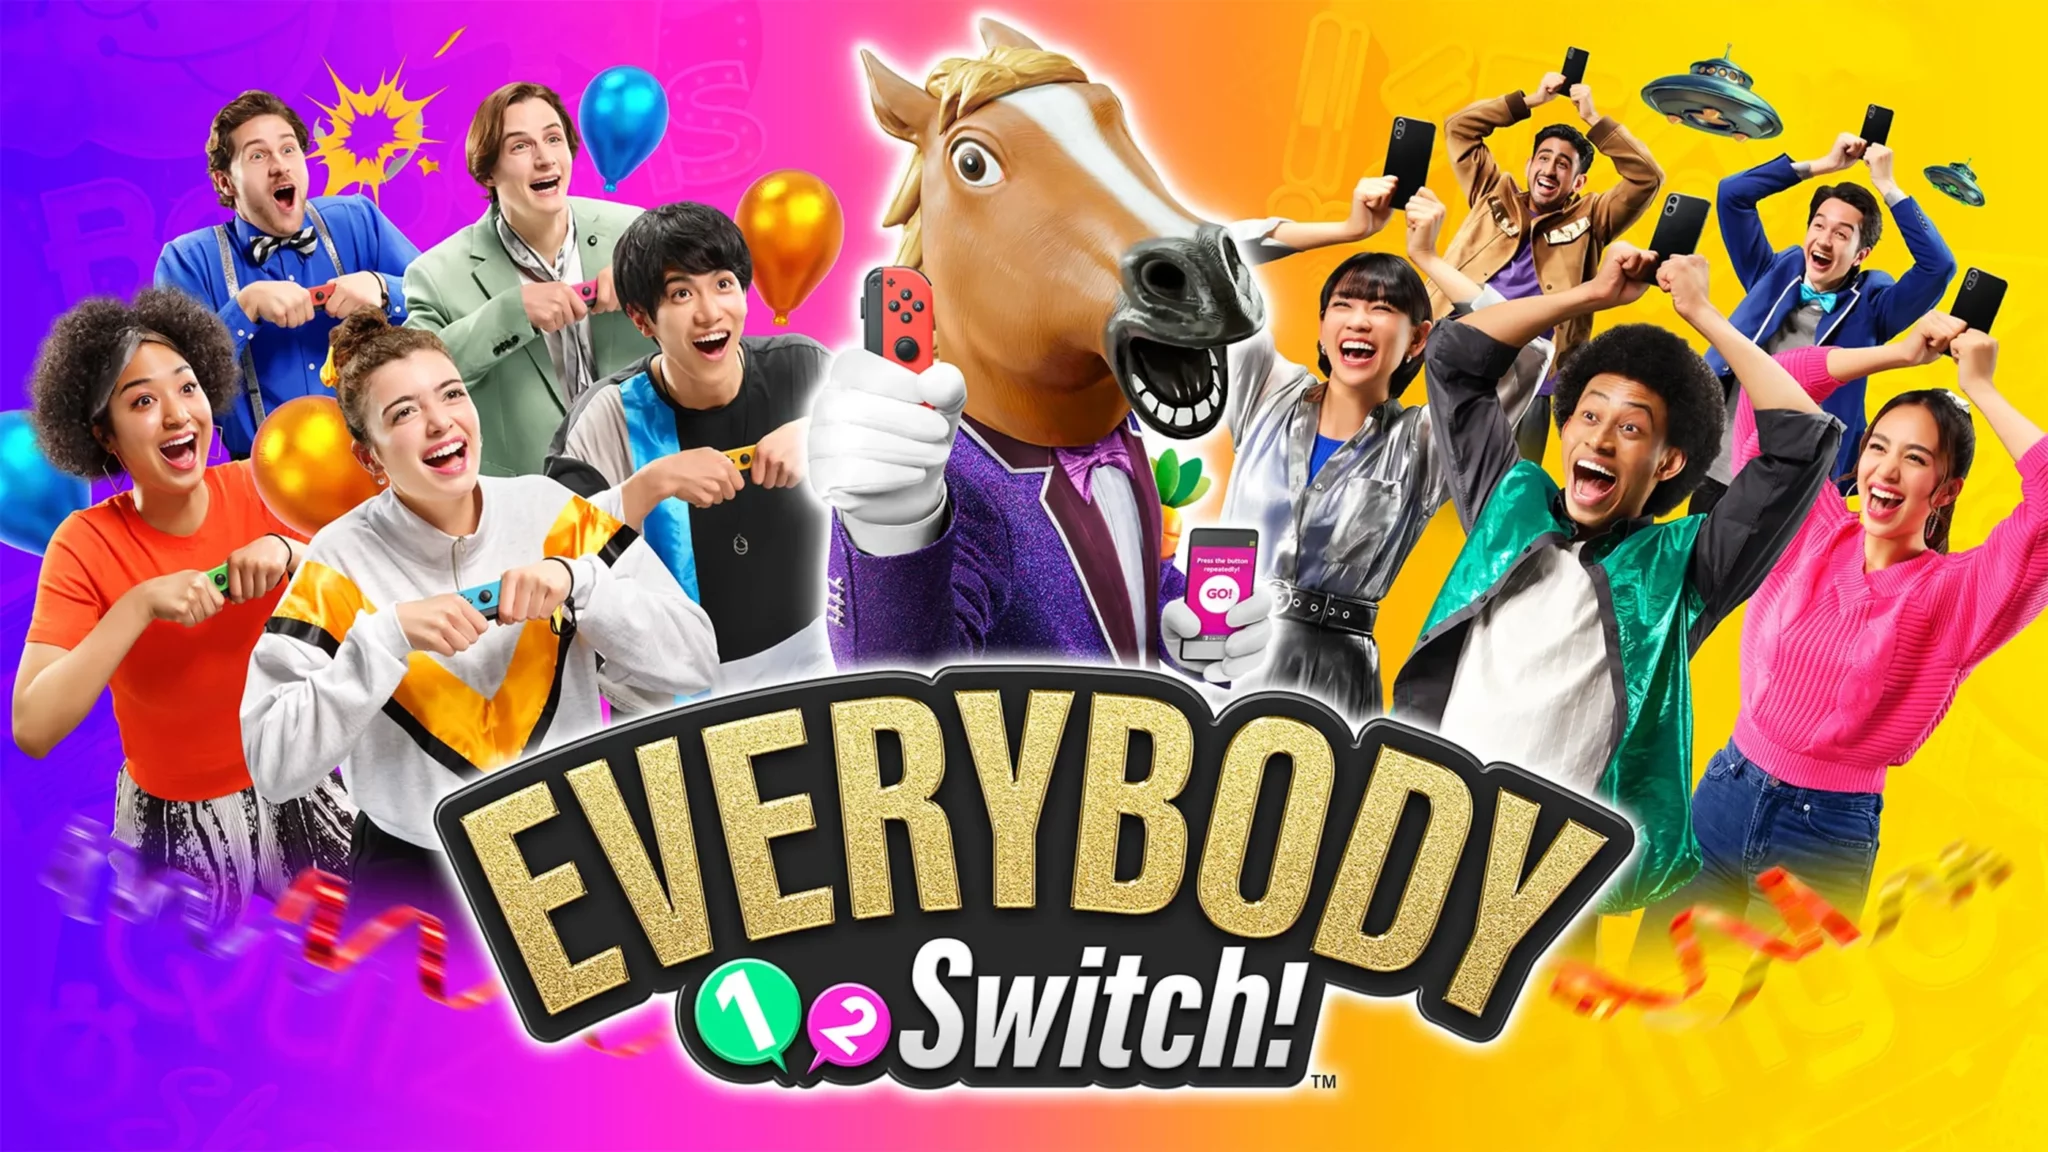 Everybody 1-2-Switch!, Nintendo, Pokračování 1-2-Switch provází pochyby a nízká cena